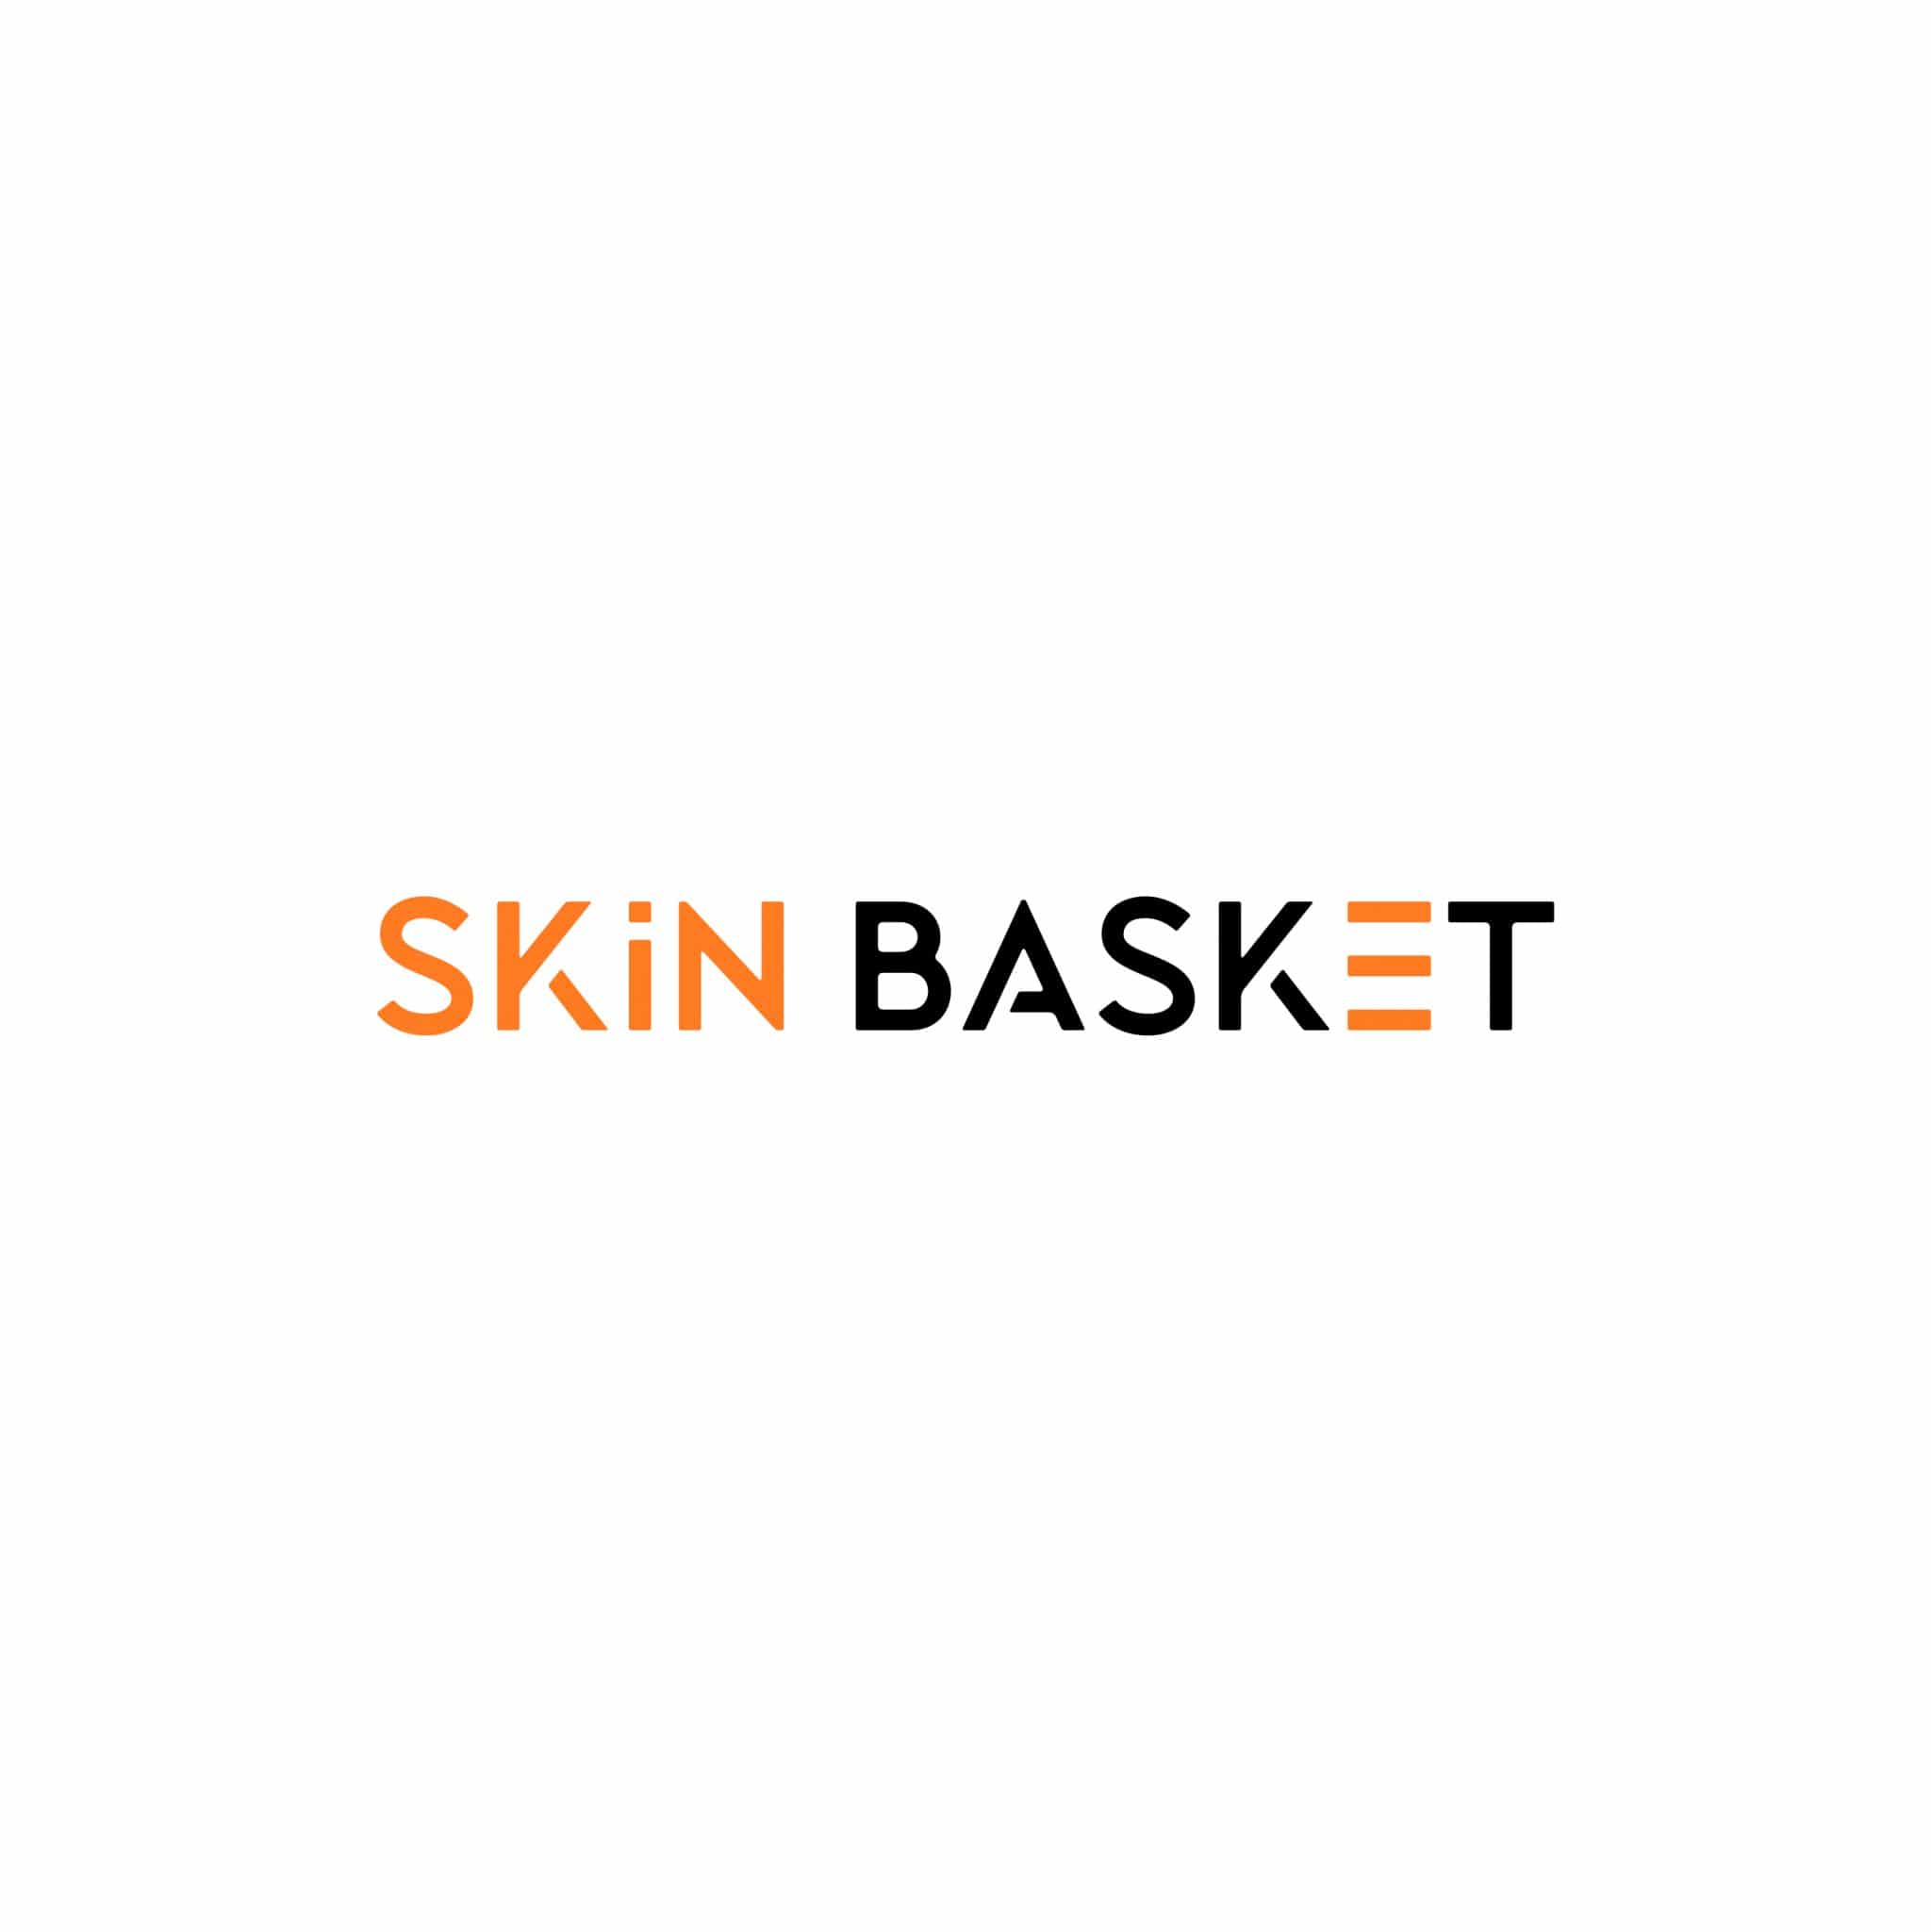 skin basket